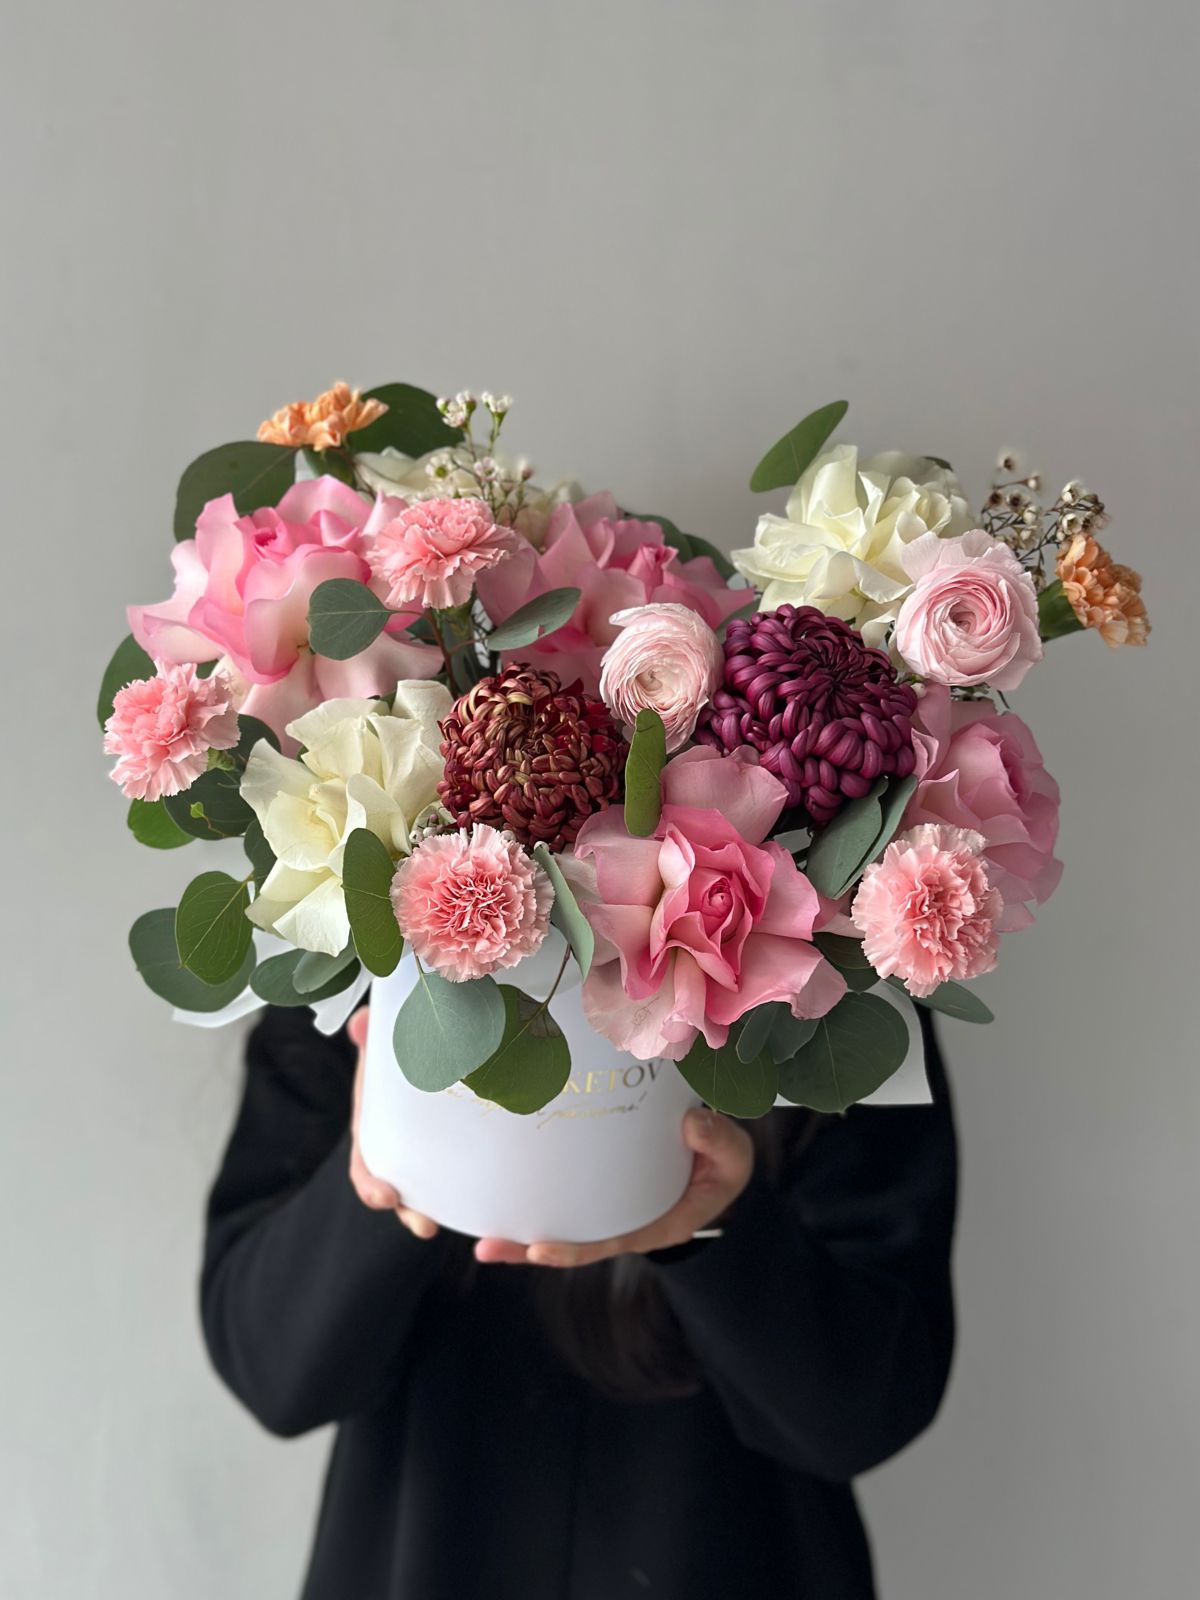 Композиция "Flowers Harmony" из роз, гвоздик, ранункулюсов и хризантем